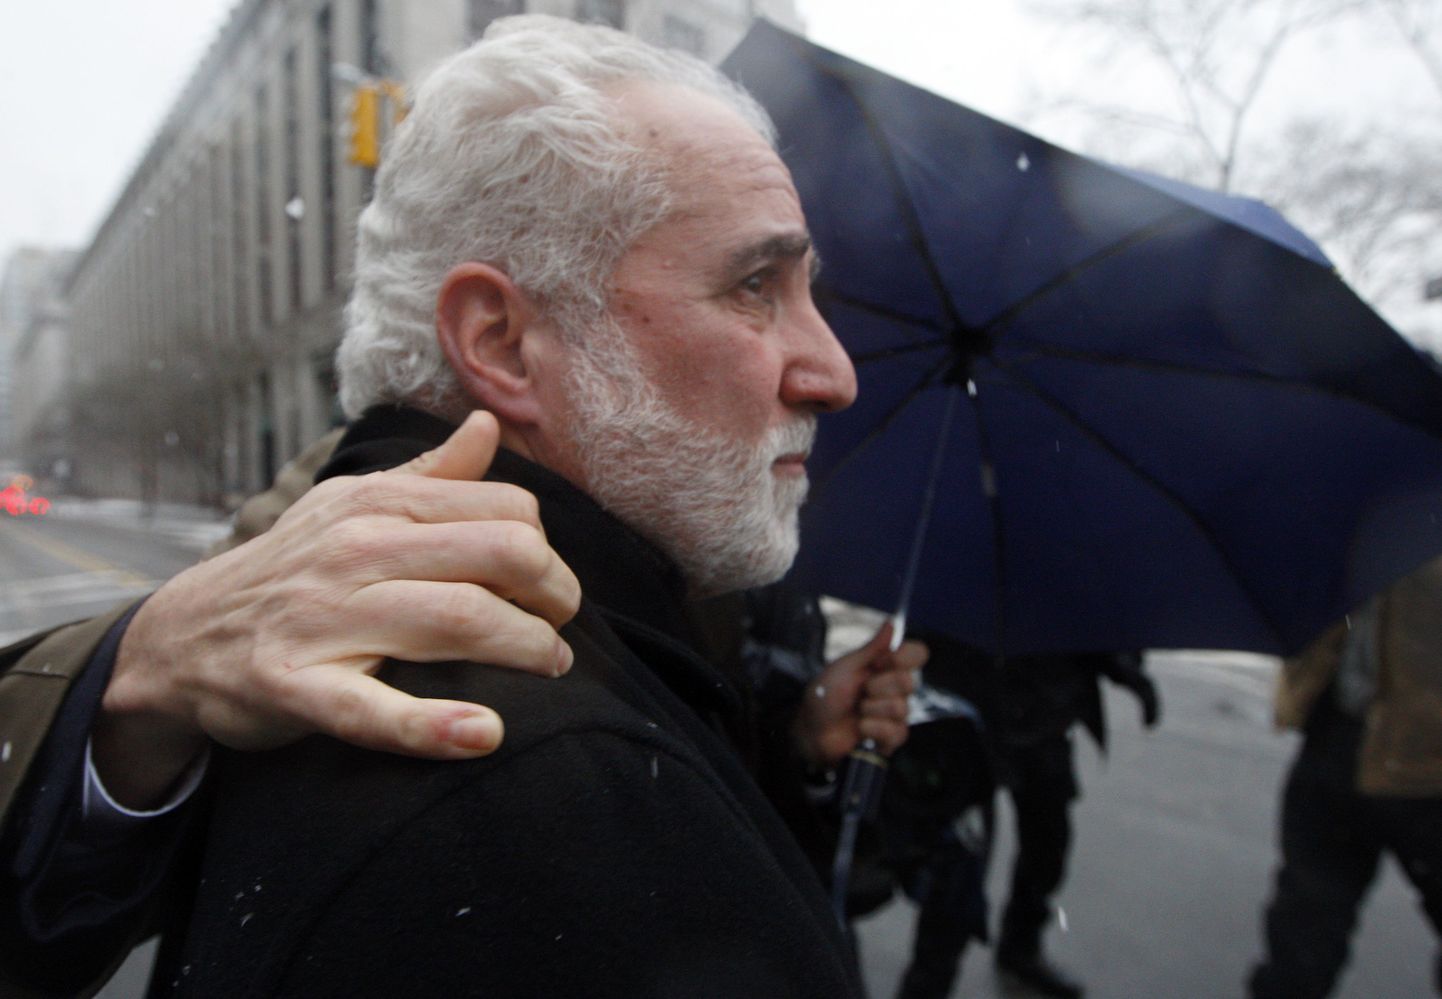 Daniel Bonventre 25.veebruaril New Yorgi föderaalkohtust lahkumas. Mees püüab fotograafide eemaletõrjumiseks kasutada nii advokaati kui vihmavarju.